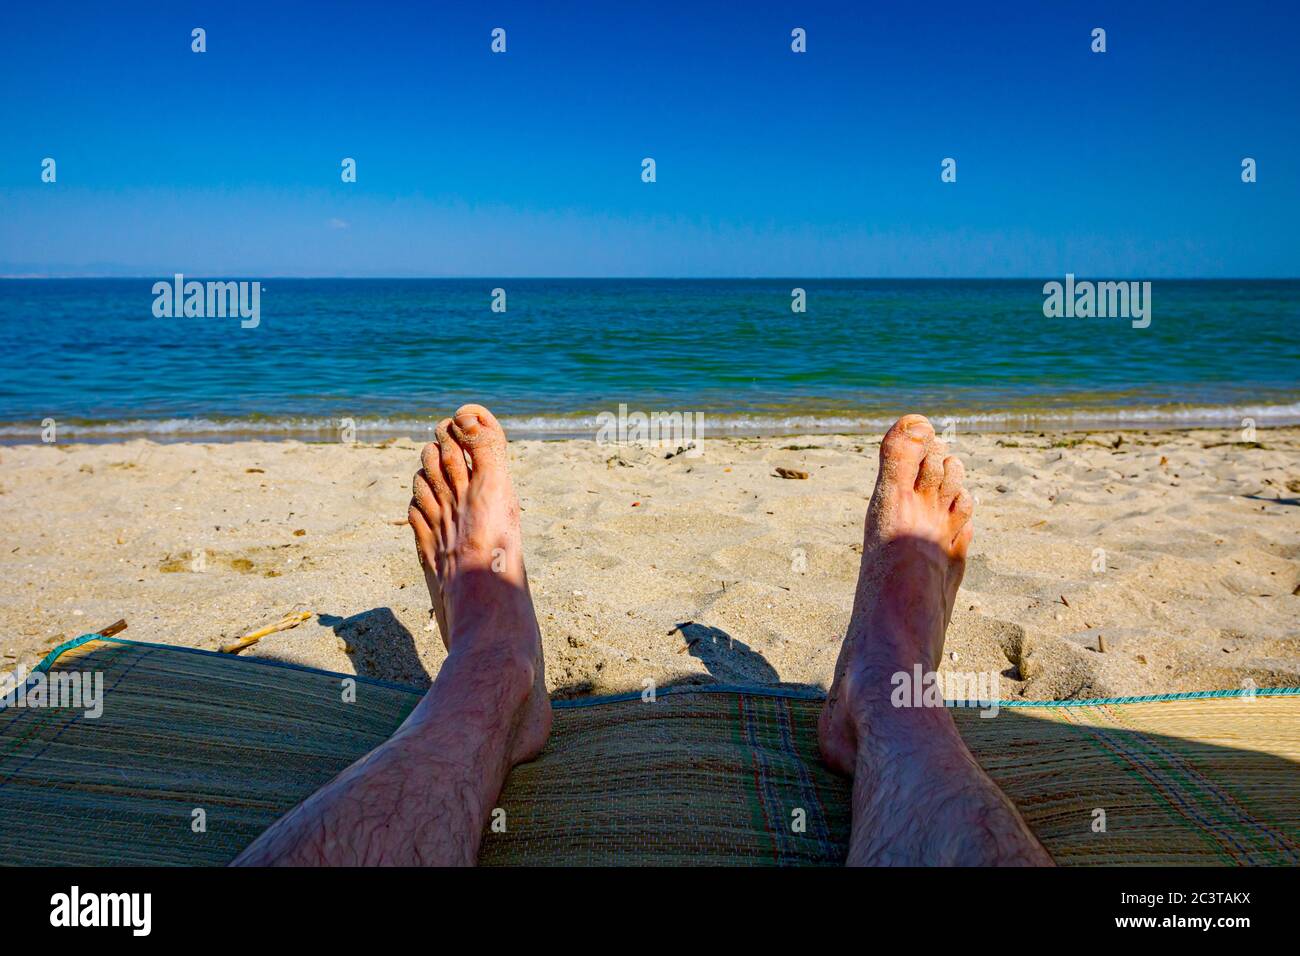 Die Beine des Mannes sonnen sich, indem sie unbeschwert auf der Matte neben der Küste liegen, am öffentlichen Strand. Stockfoto